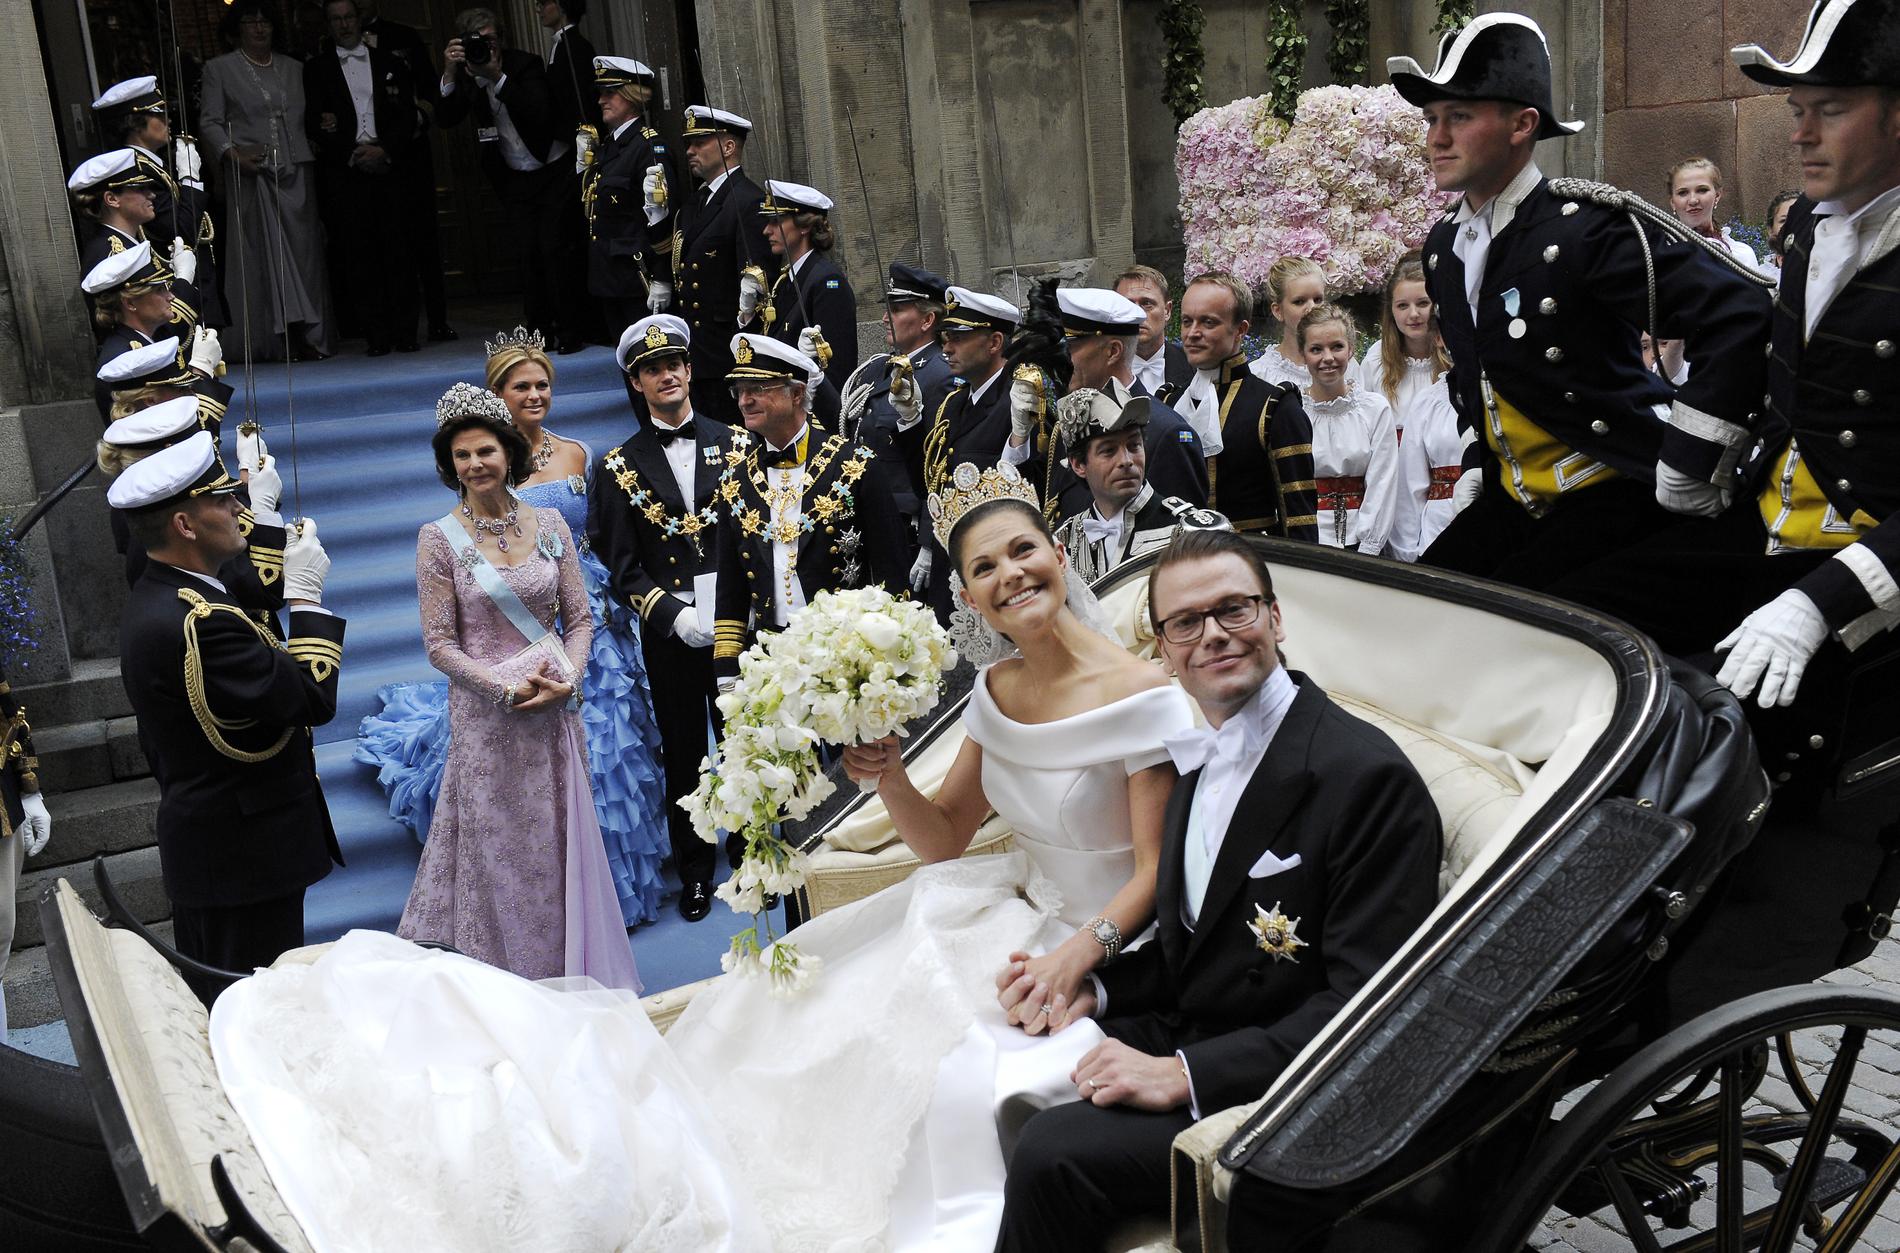 19 juni sa Victoria och Daniel ja till varandra i Storkyrkan i Stockholm.